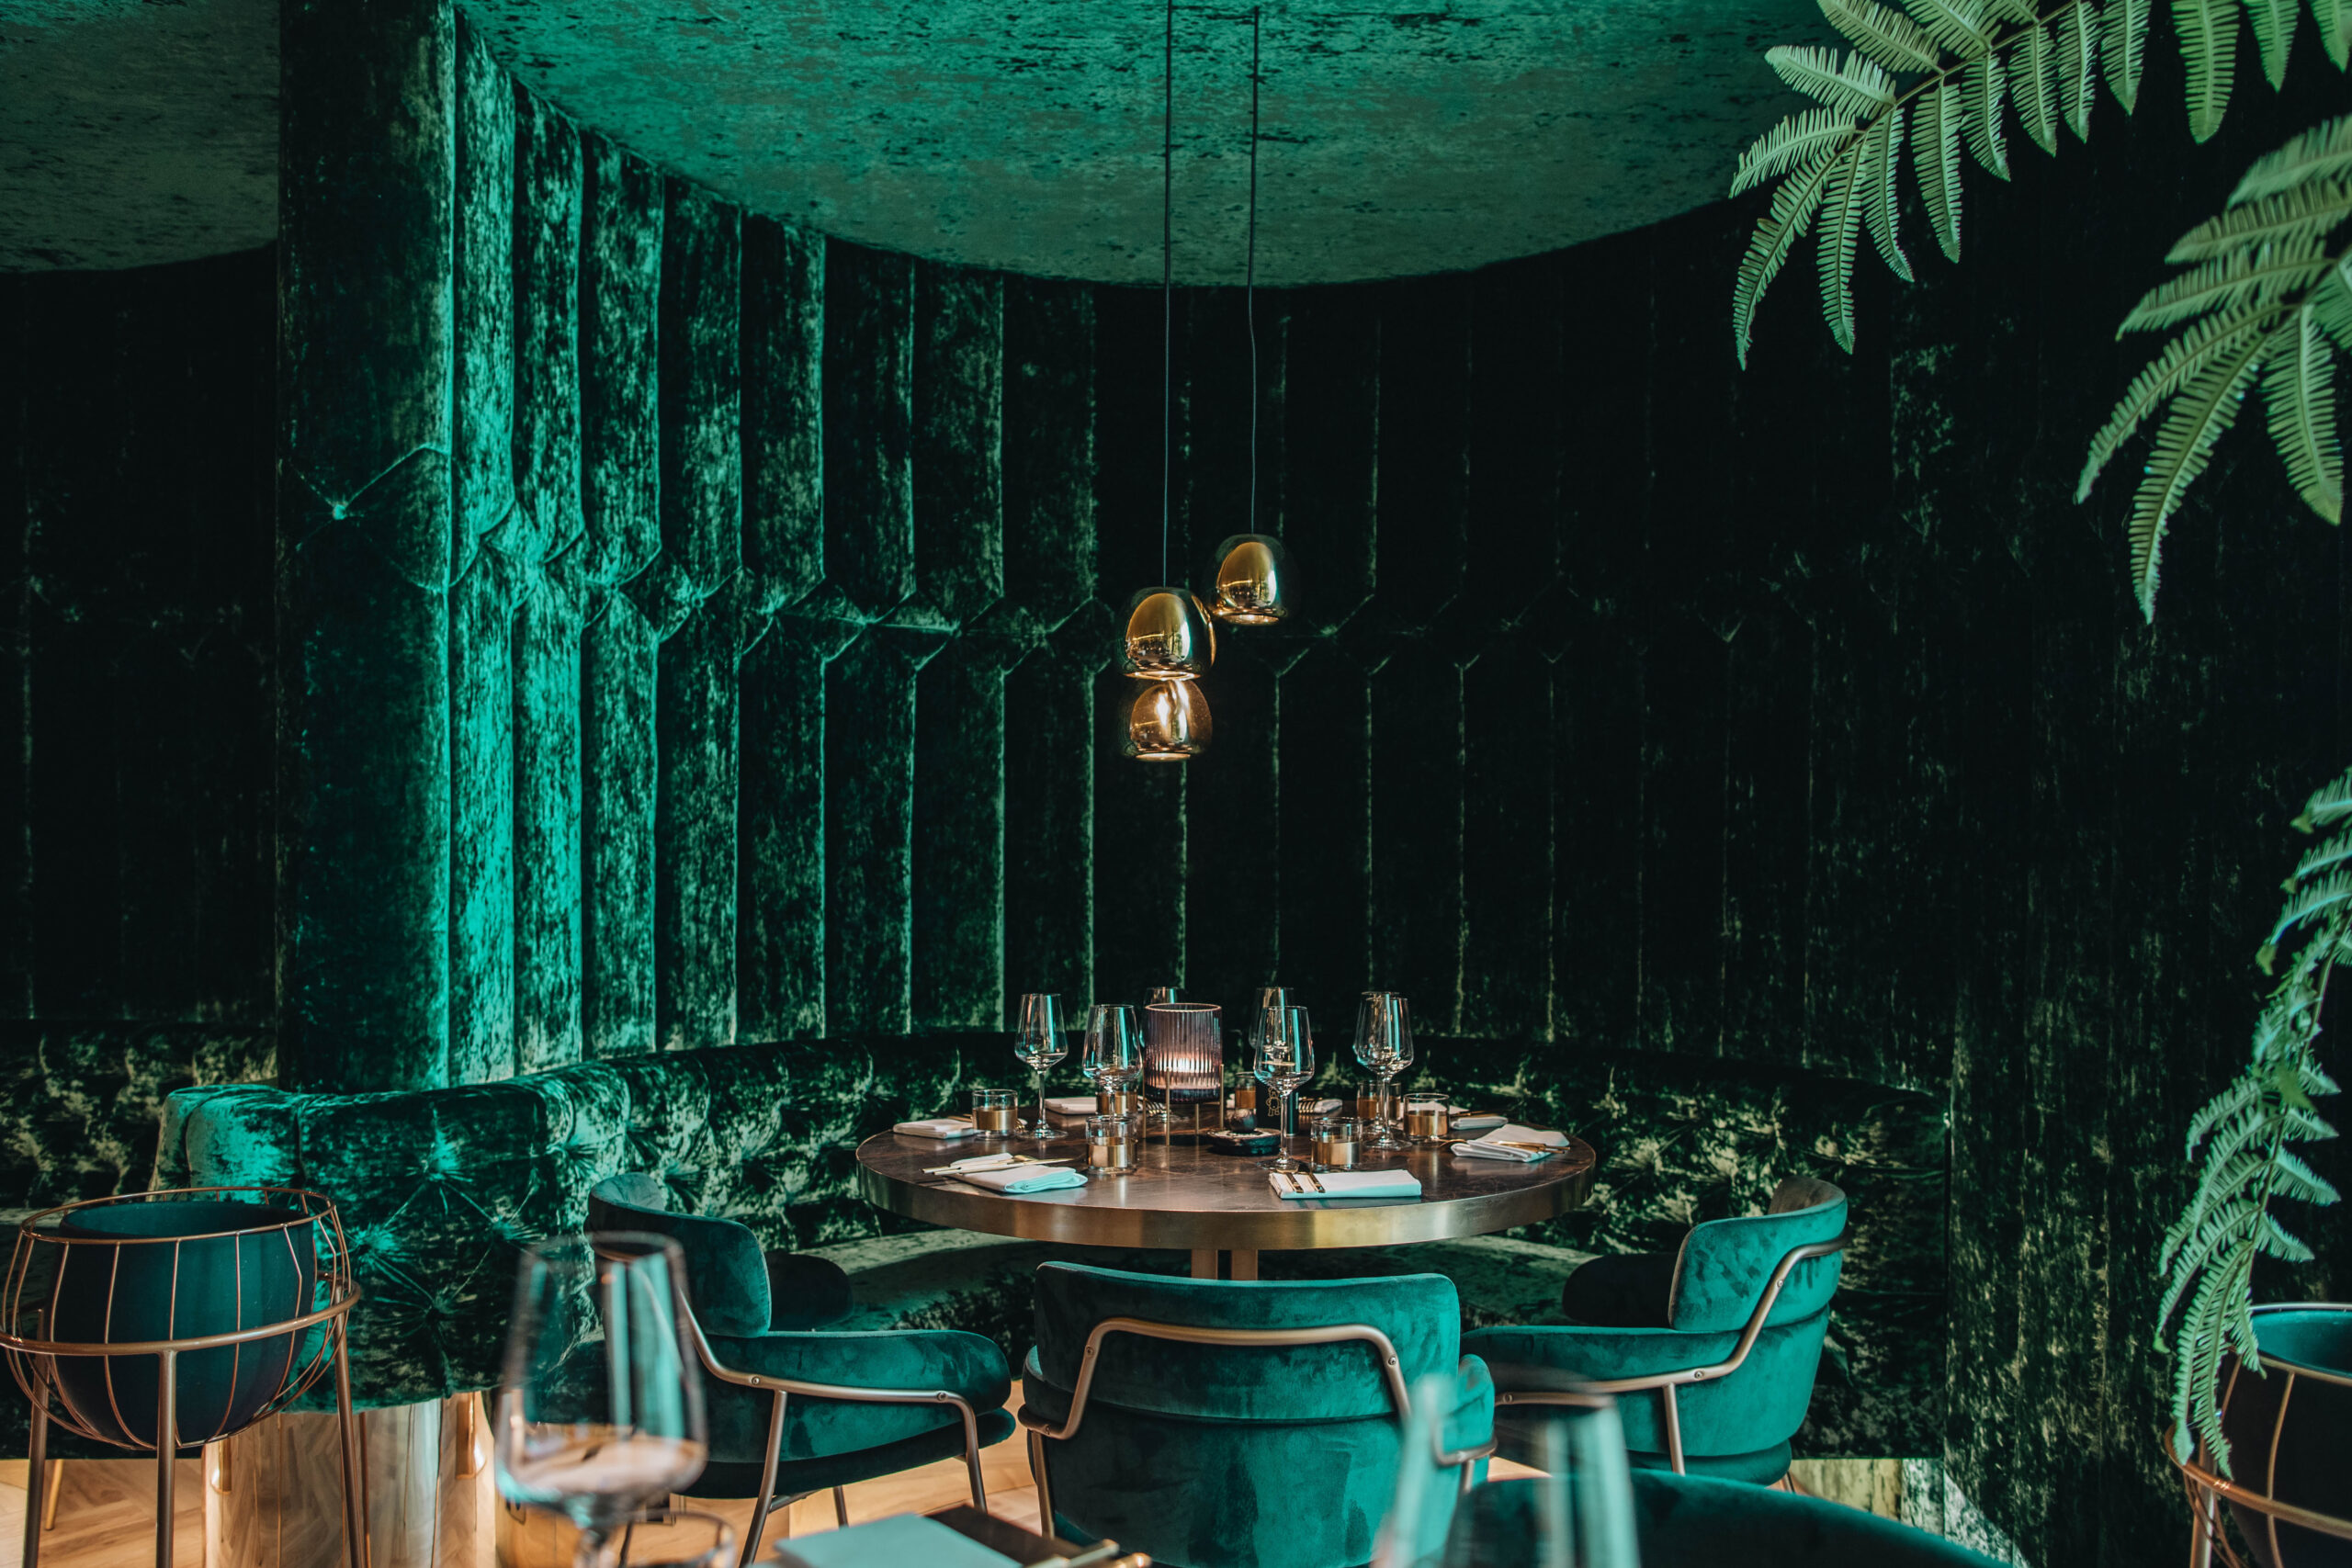 Zithoek in Restaurant Goud met volledig groene, suede, ronde wand en daarin een ronde tafel met dezelfde groene stoelen. Drie hanglampen uit het plafond.